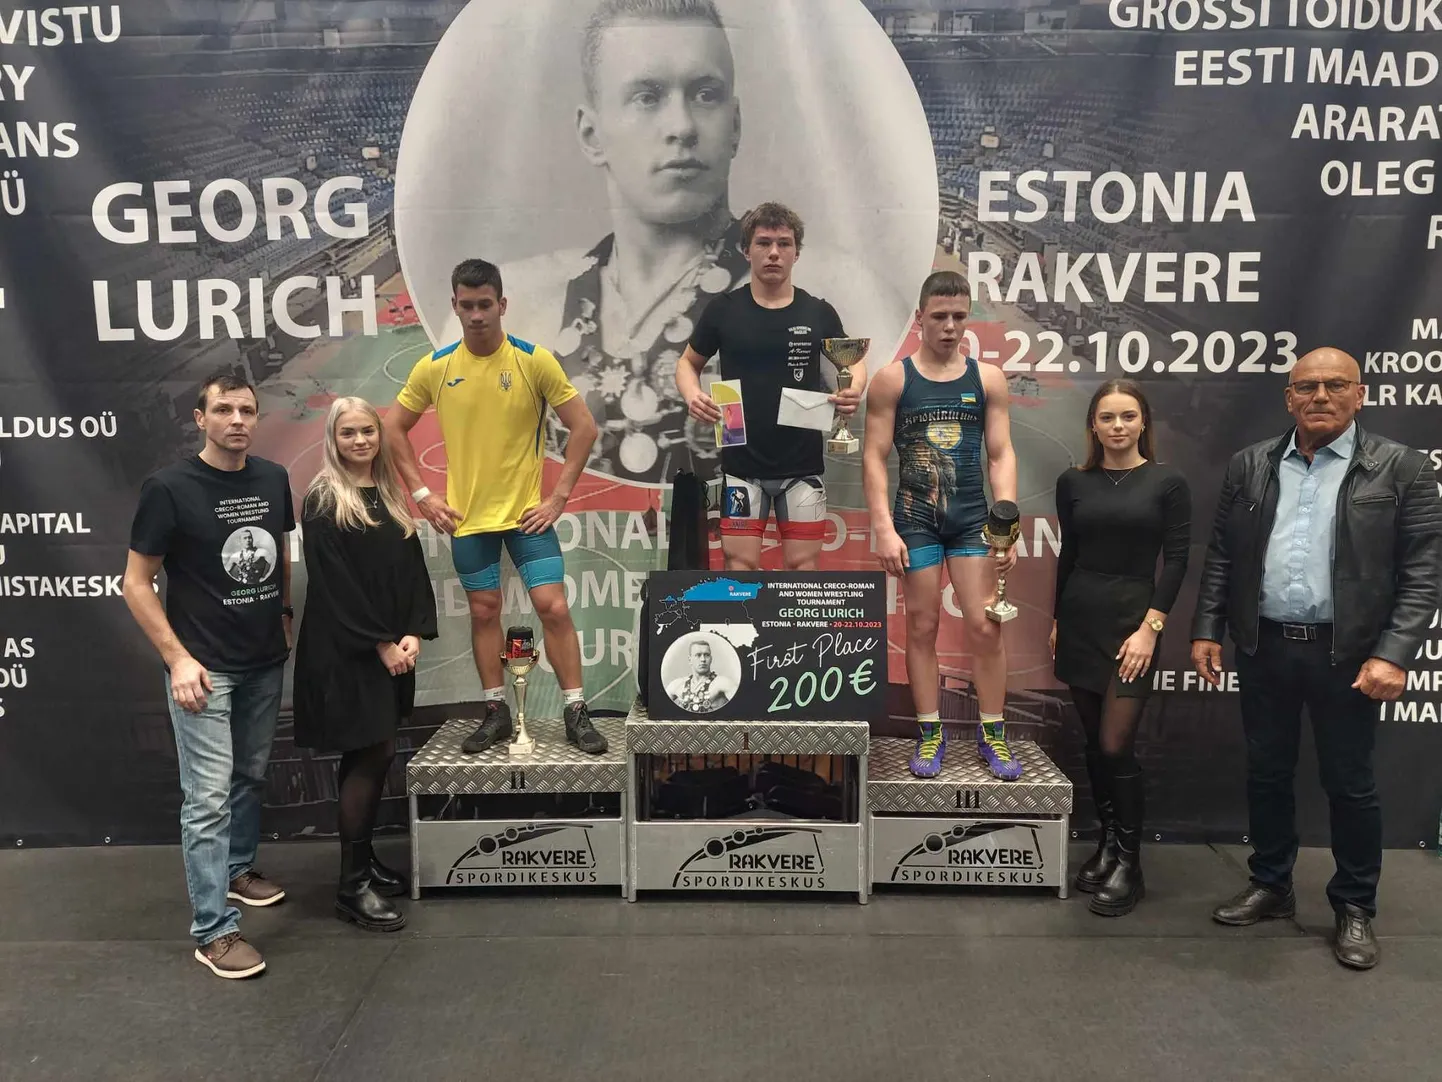 Venno Põrk (poodiumi kõrgeimal astmel) võitis U15 vanuserühmas -68 kg kaalukategoorias Georg Lurichi turniiril esikoha.